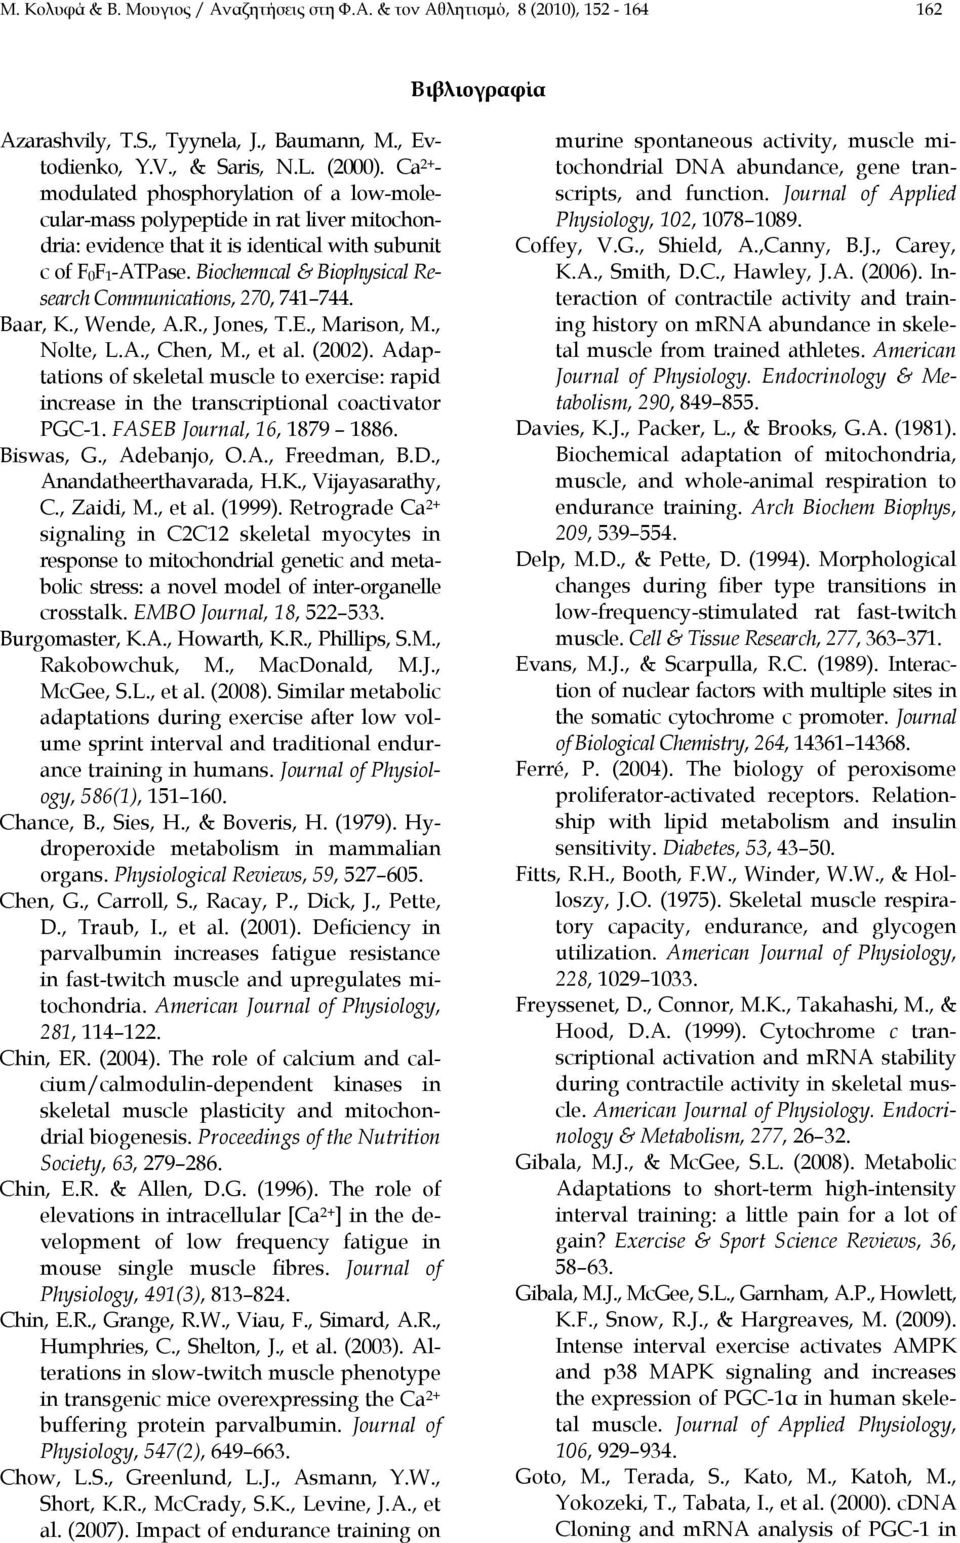 Biochemιcal & Biophysical Research Communications, 270, 741 744. Baar, K., Wende, A.R., Jones, T.E., Marison, M., Nolte, L.A., Chen, M., et al. (2002).